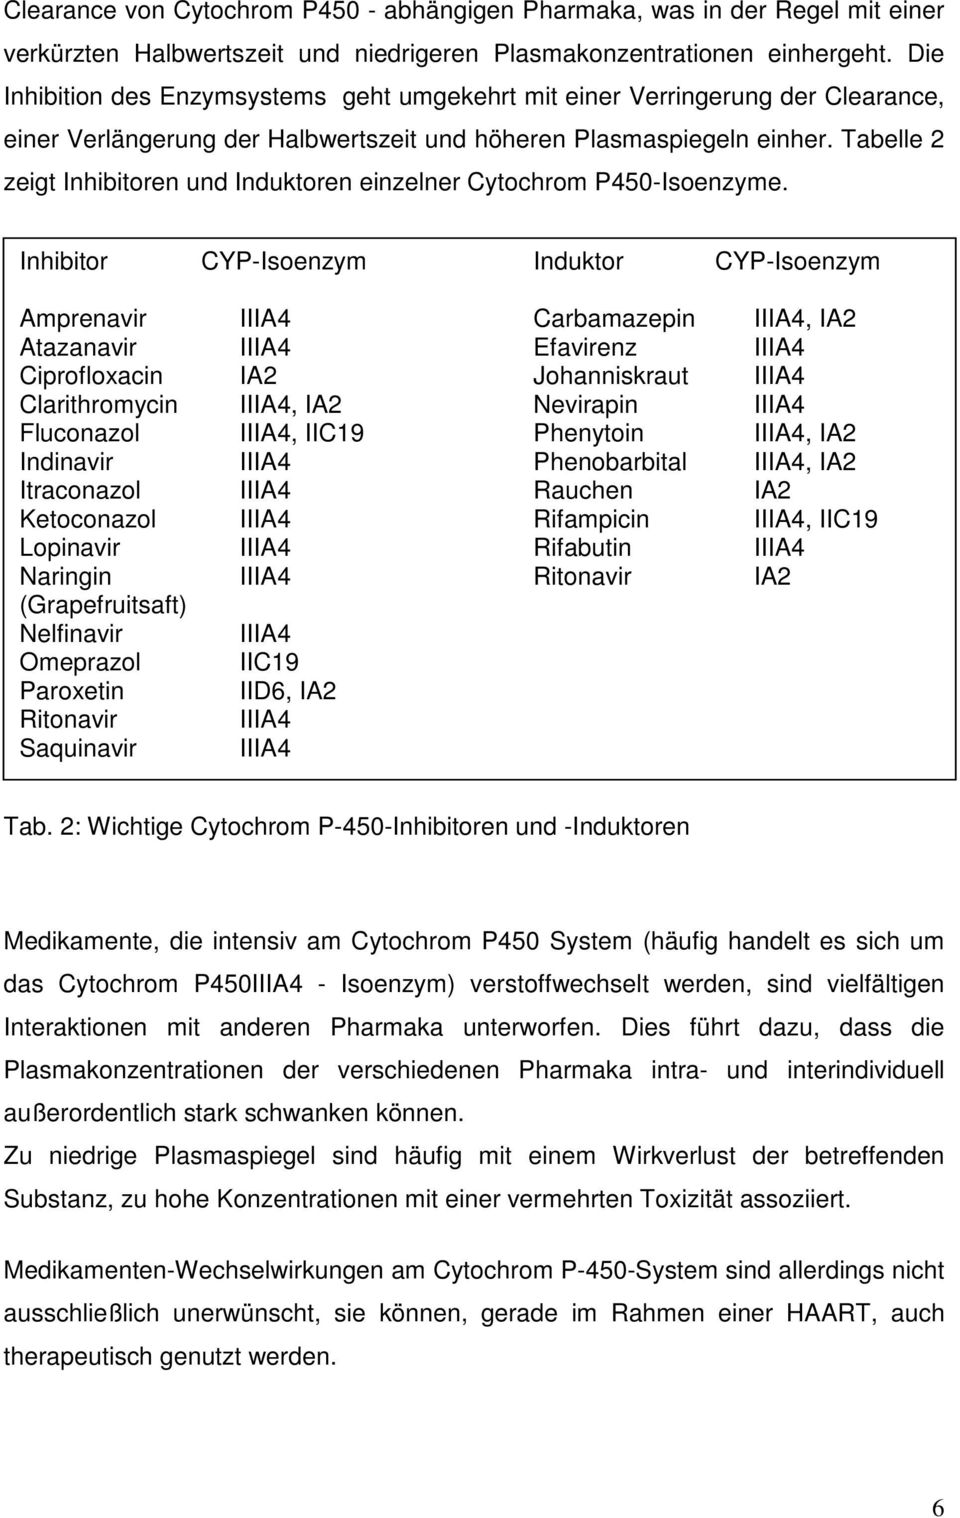 Tabelle 2 zeigt Inhibitoren und Induktoren einzelner Cytochrom P450-Isoenzyme.